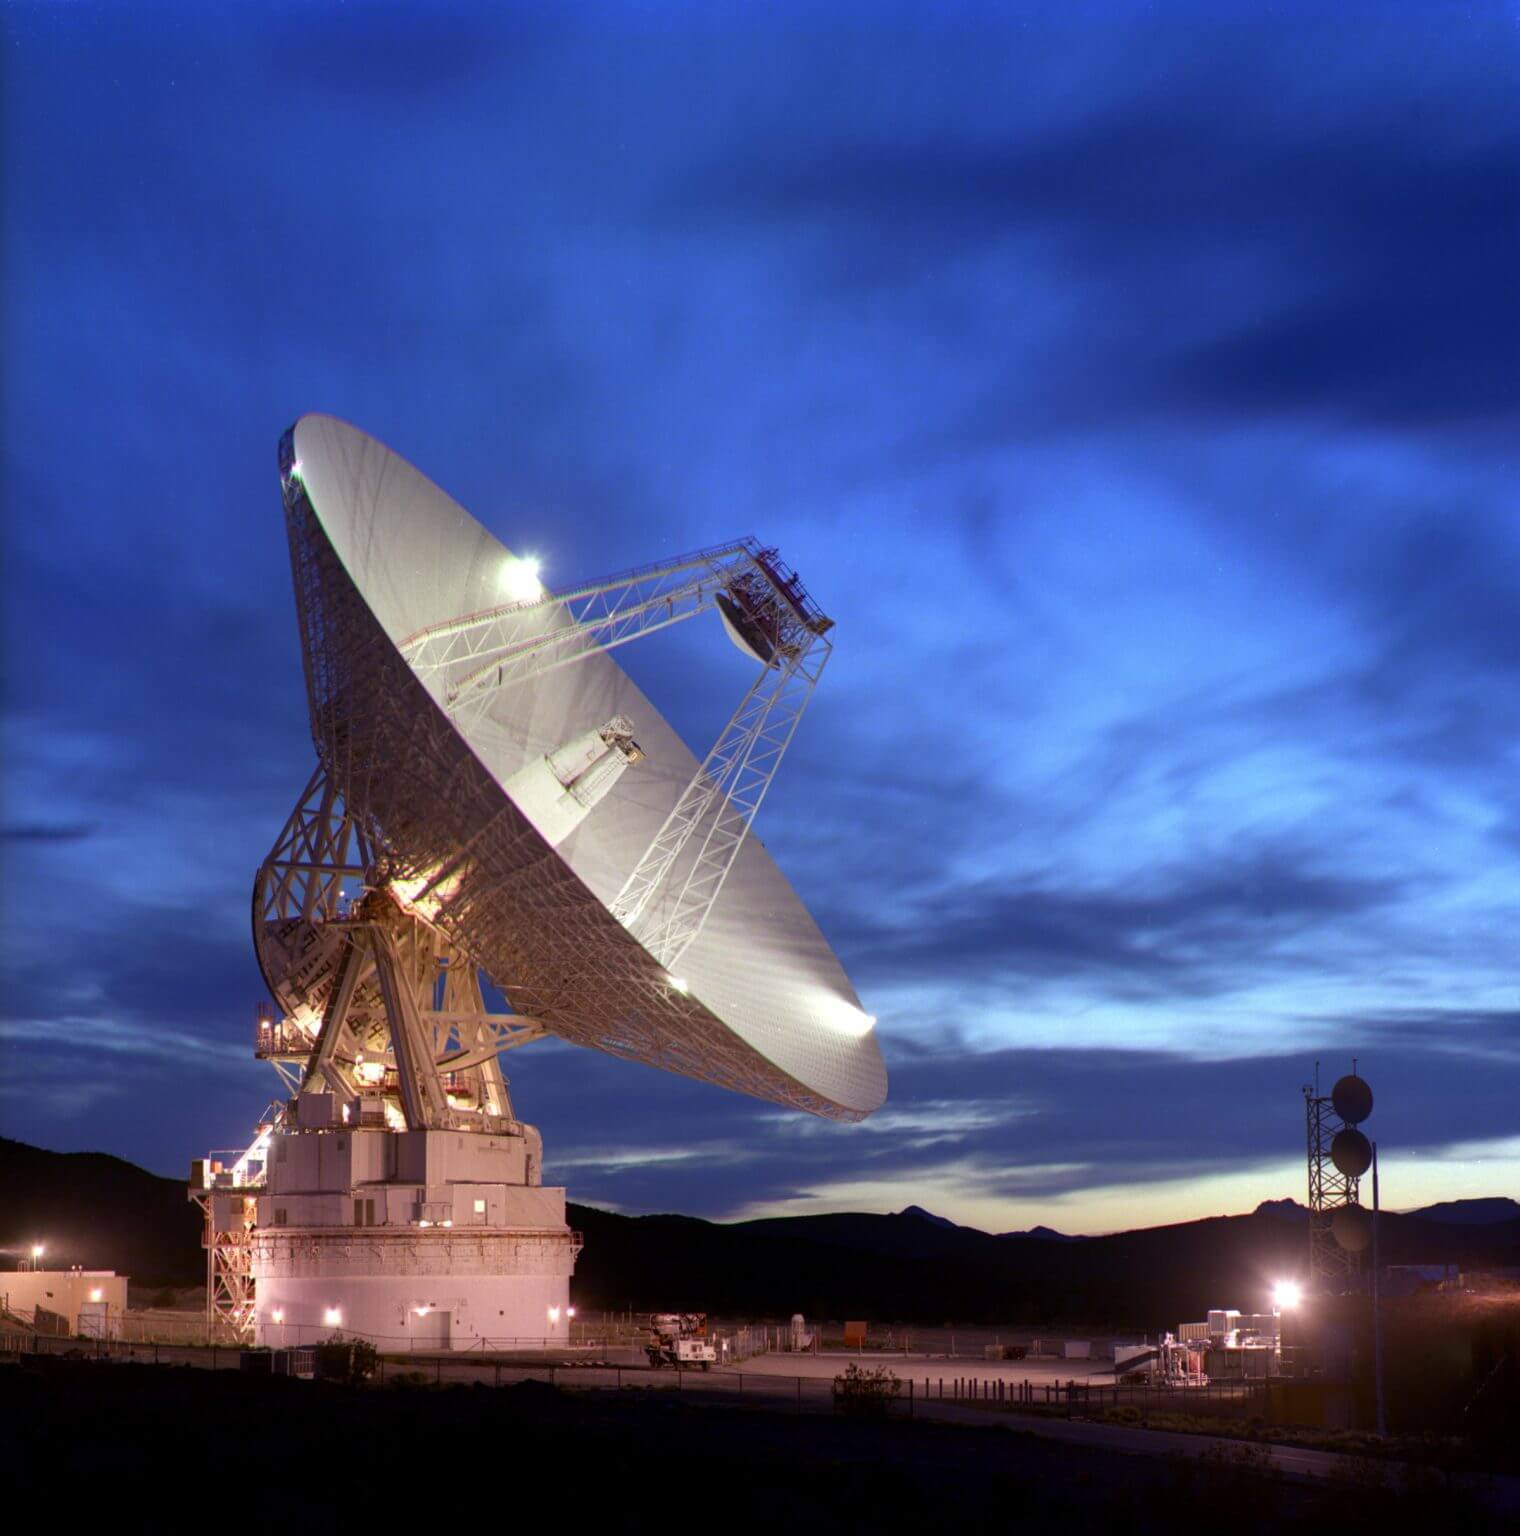 מכ"ם מערכת השמש גולדסטון (GSSR) הוא מערכת מכ"ם גדולה המשמשת לחקירת עצמים במערכת השמש. המערכת, הממוקמת במדבר ליד ברסטו, קליפורניה, כוללת משדר X-band (8500 מגה-הרץ) בהספק של 500 קילוואט ומקלט רעש נמוך על אנטנת ה-DSS 14 בגובה 70 מטר במתקן תקשורת החלל העמוק של גולדסטון. קרדיט: נאס"א